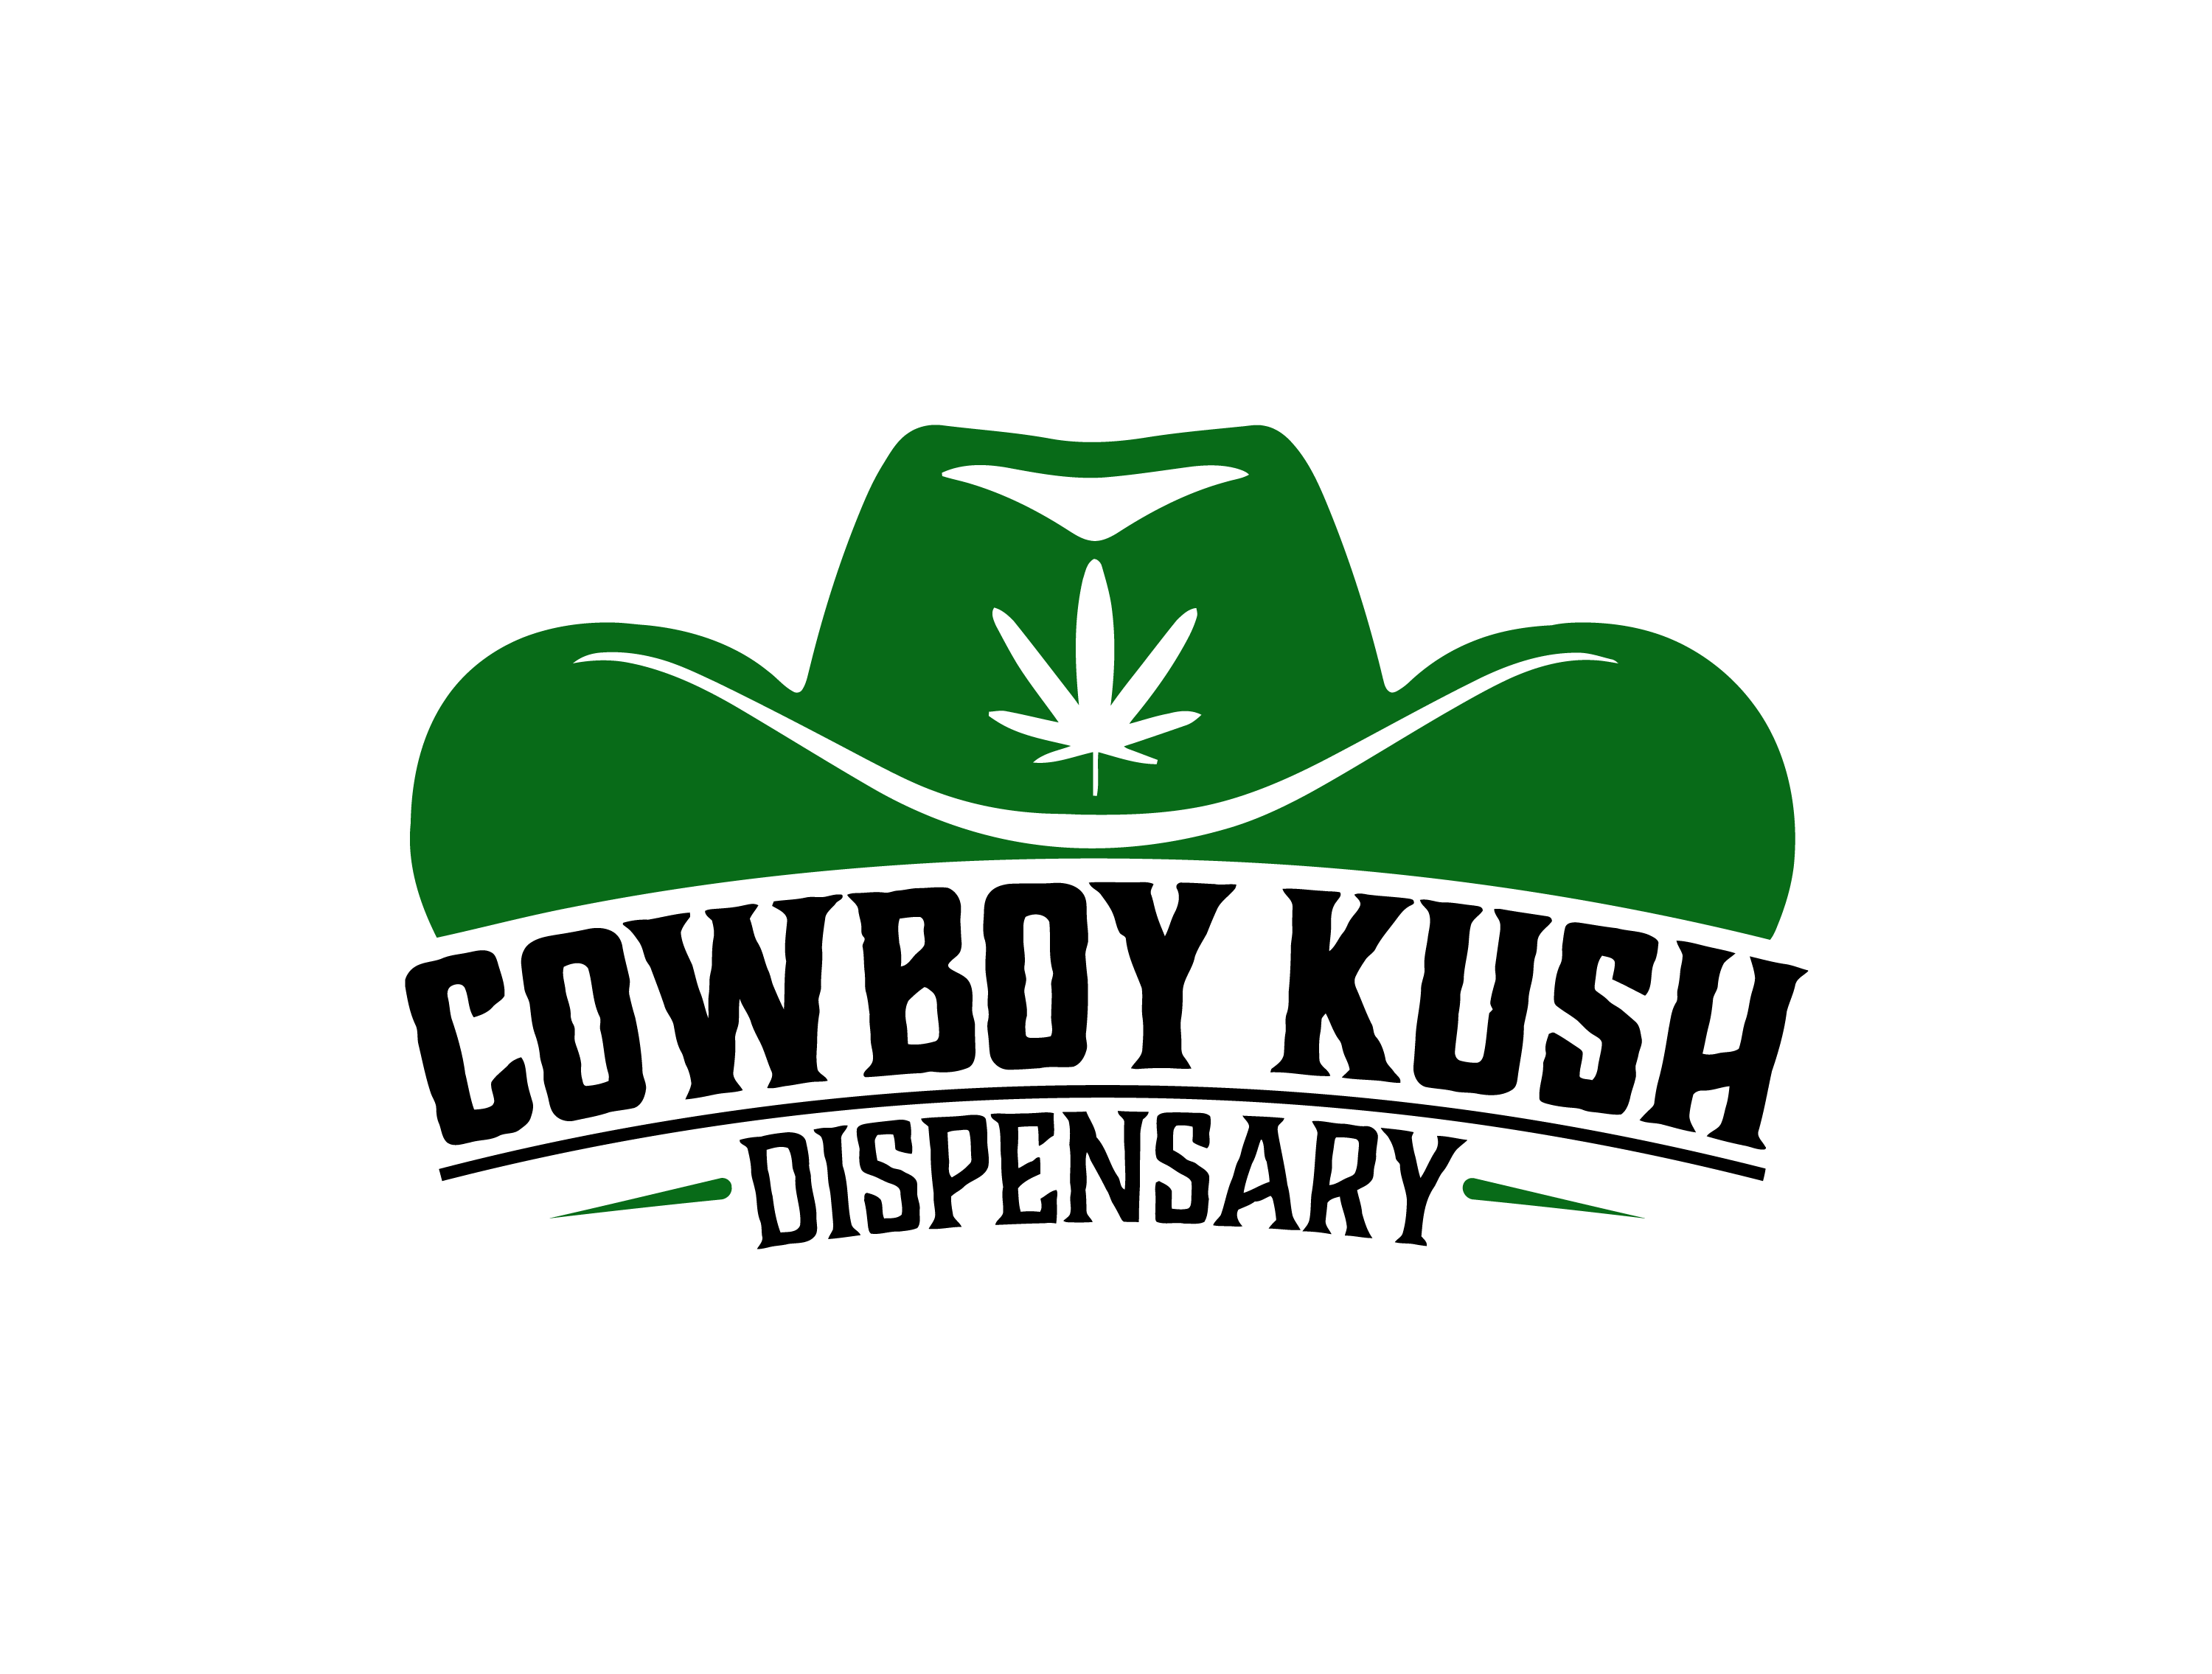 Cowboy Kush Dispensary logo